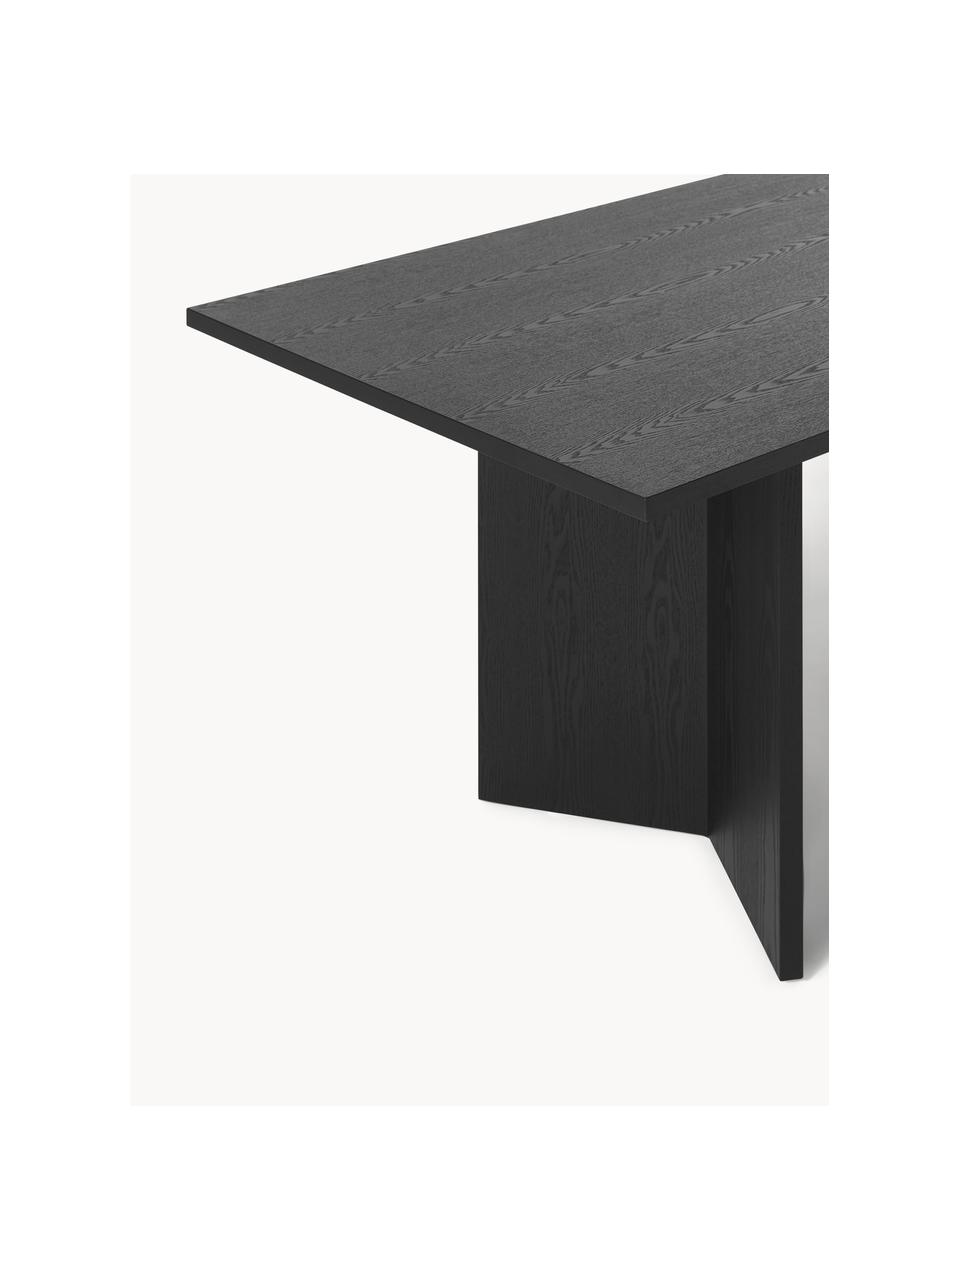 Eettafel Toni in zwart, 200 x 90 cm, MDF met essenhoutfineer, gelakt

Dit product is gemaakt van duurzaam geproduceerd, FSC®-gecertificeerd hout., Hout, zwart, B 200 x H 75 cm